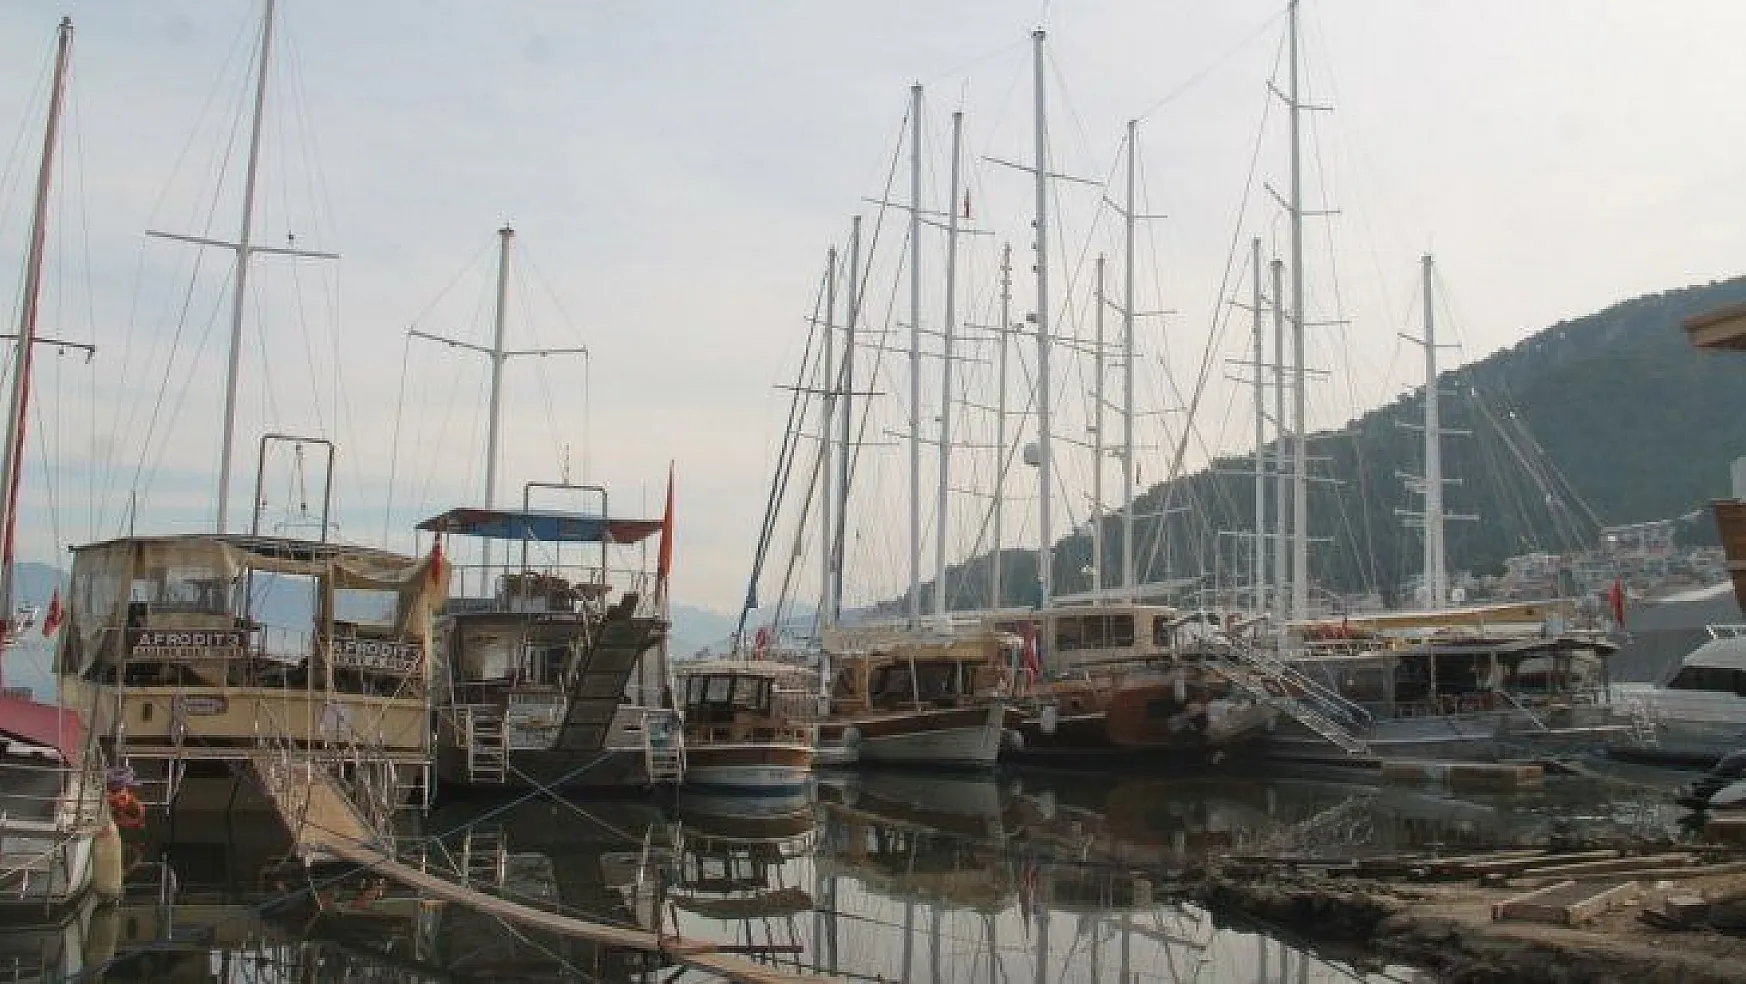 Tur tekneleri turizm sezonuna hazırlanıyor